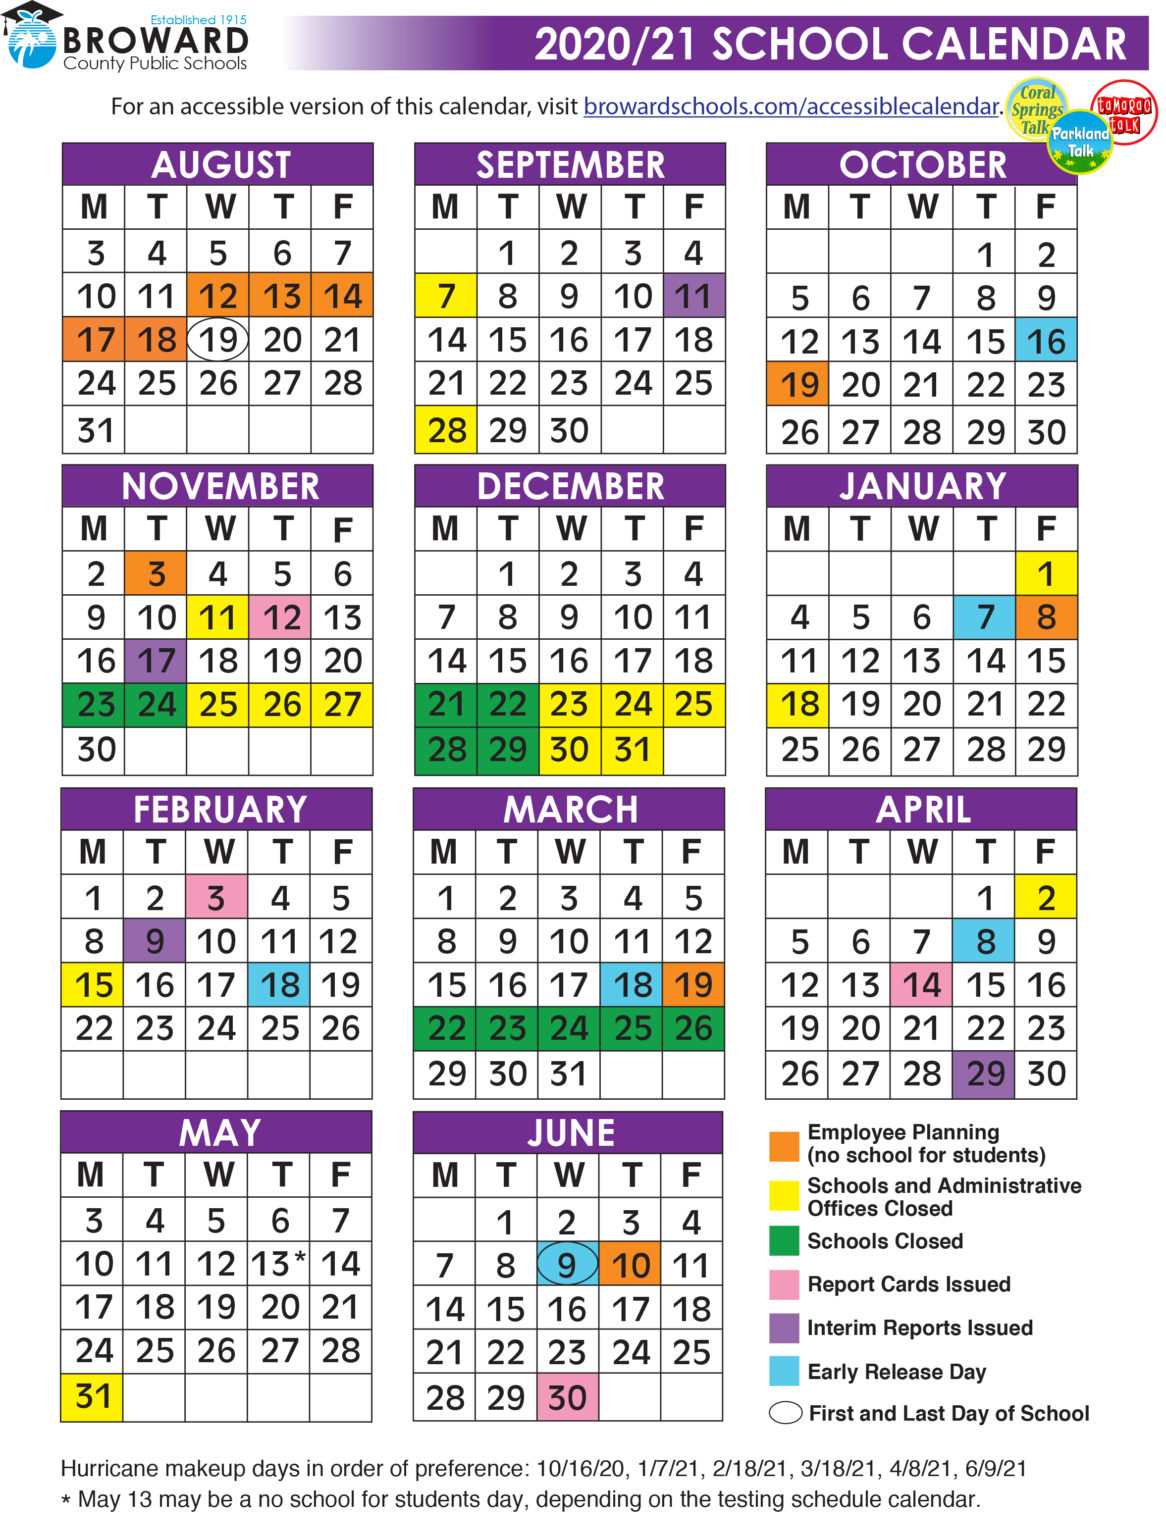 Official 2020/21 Broward County Public Schools Color Calendar